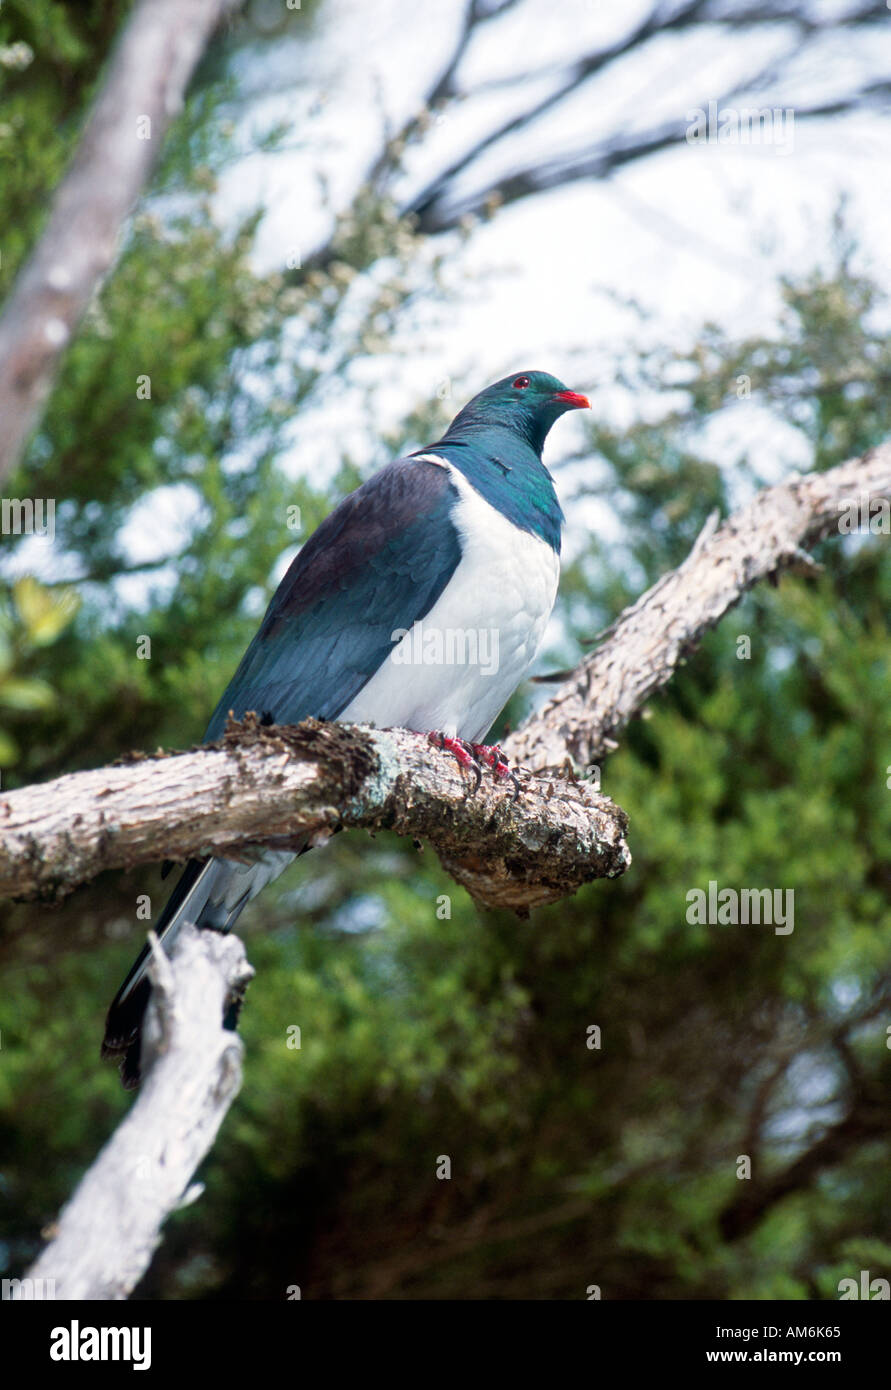 Nouvelle-zélande sauvage pigeon ramier perché sur une branche dans le parc national Abel Tasman Nouvelle Zélande Banque D'Images